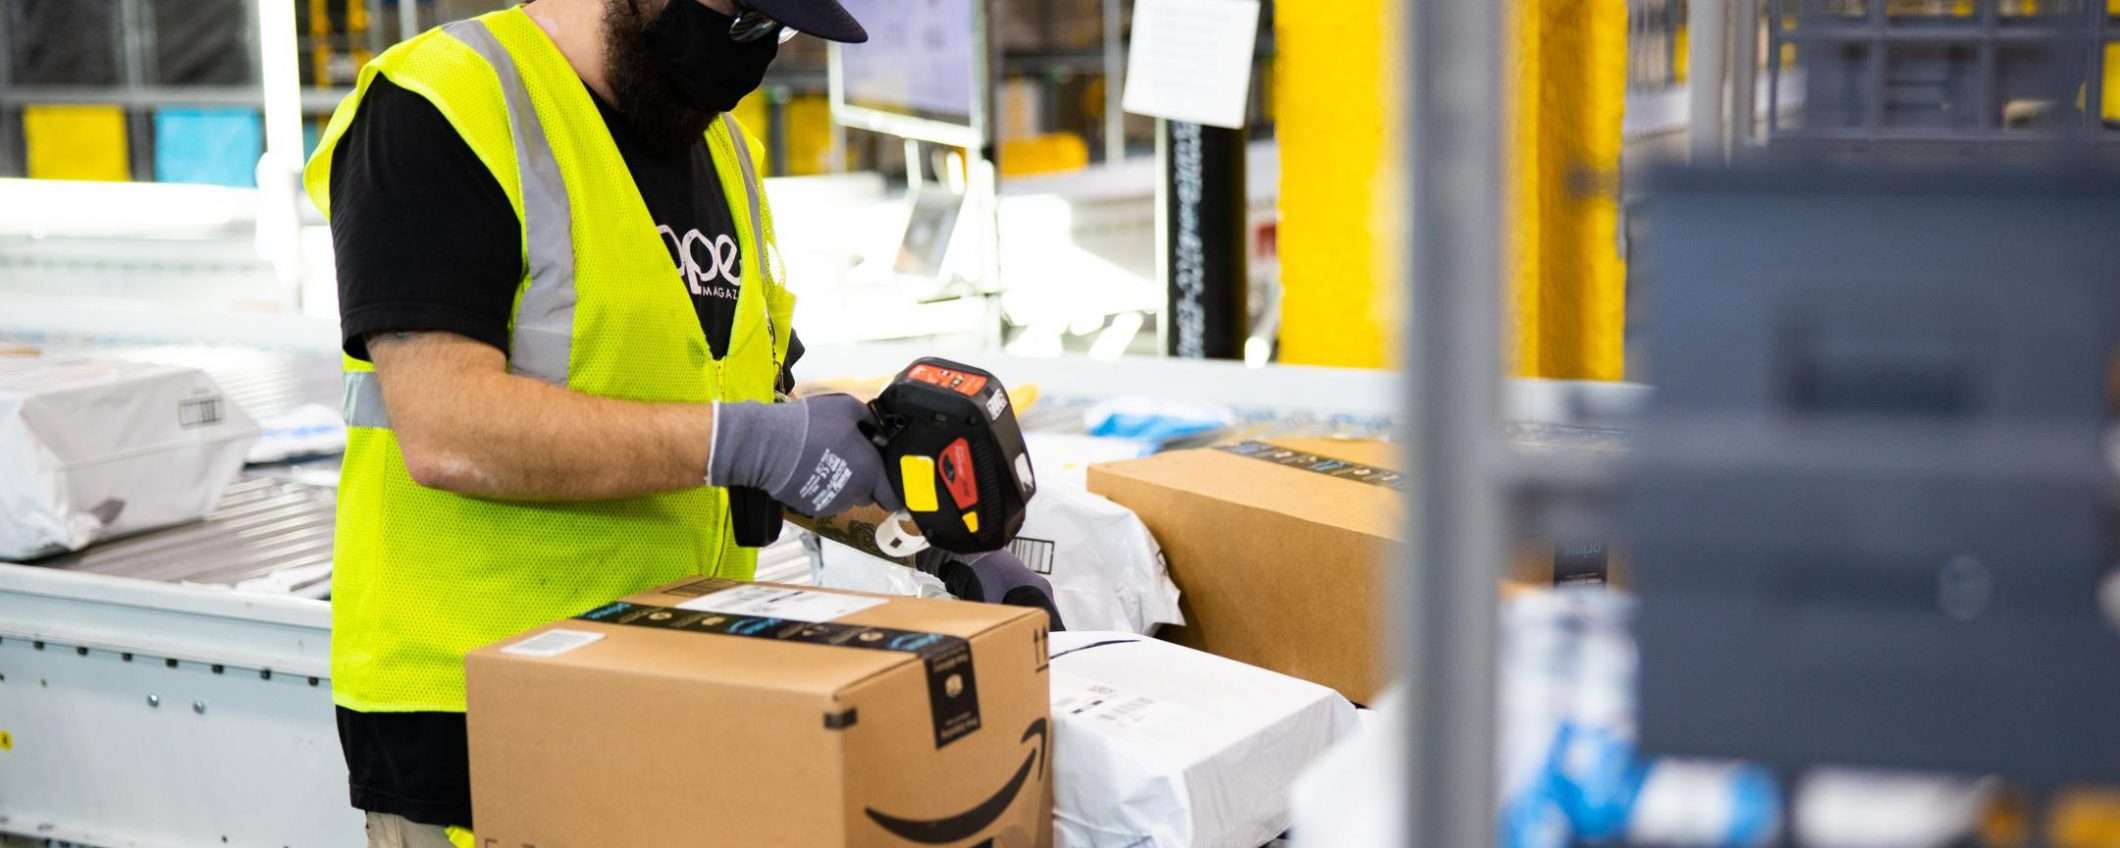 Accelera con Amazon: tutto il potenziale delle PMI